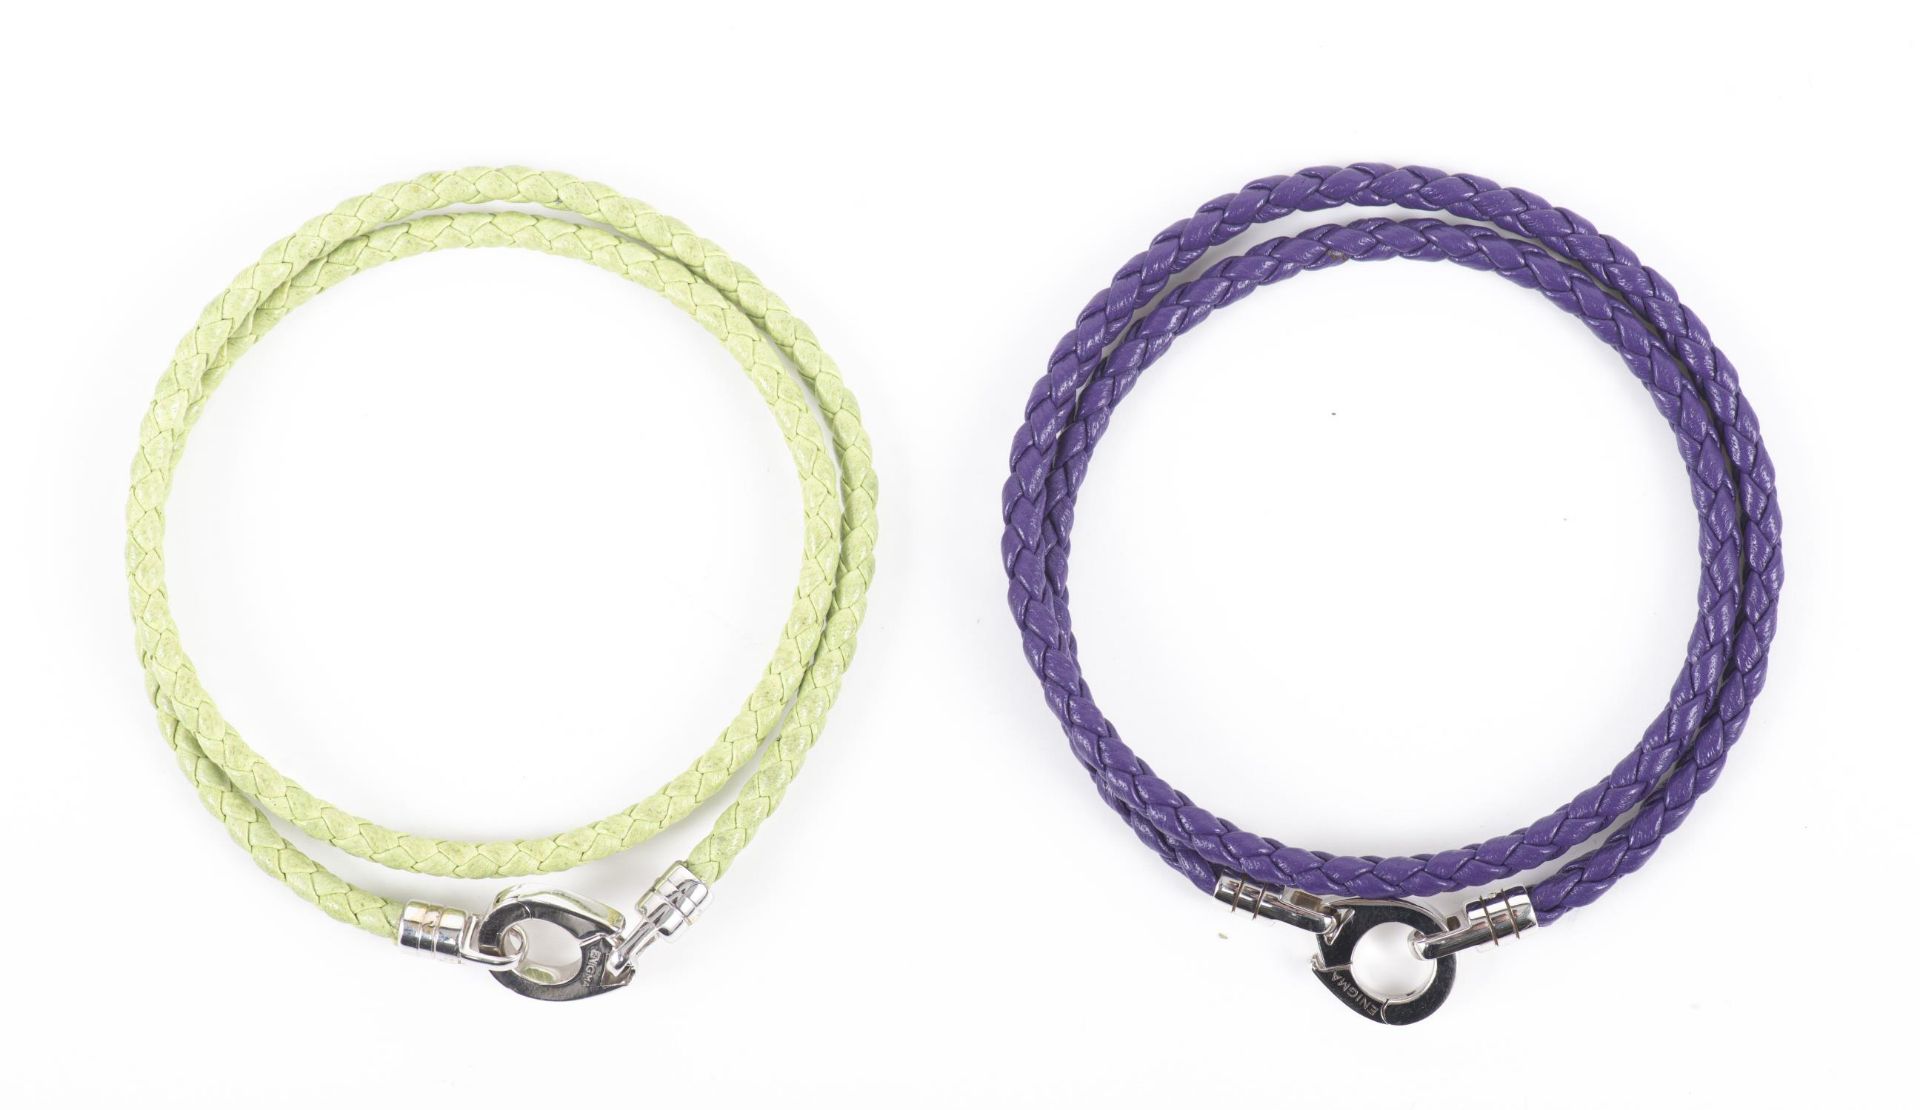 ENIGMA by Gianni Bulgari, paire de bracelets en cuir tressé (divers coloris) et fermoir or gris - Image 8 of 18